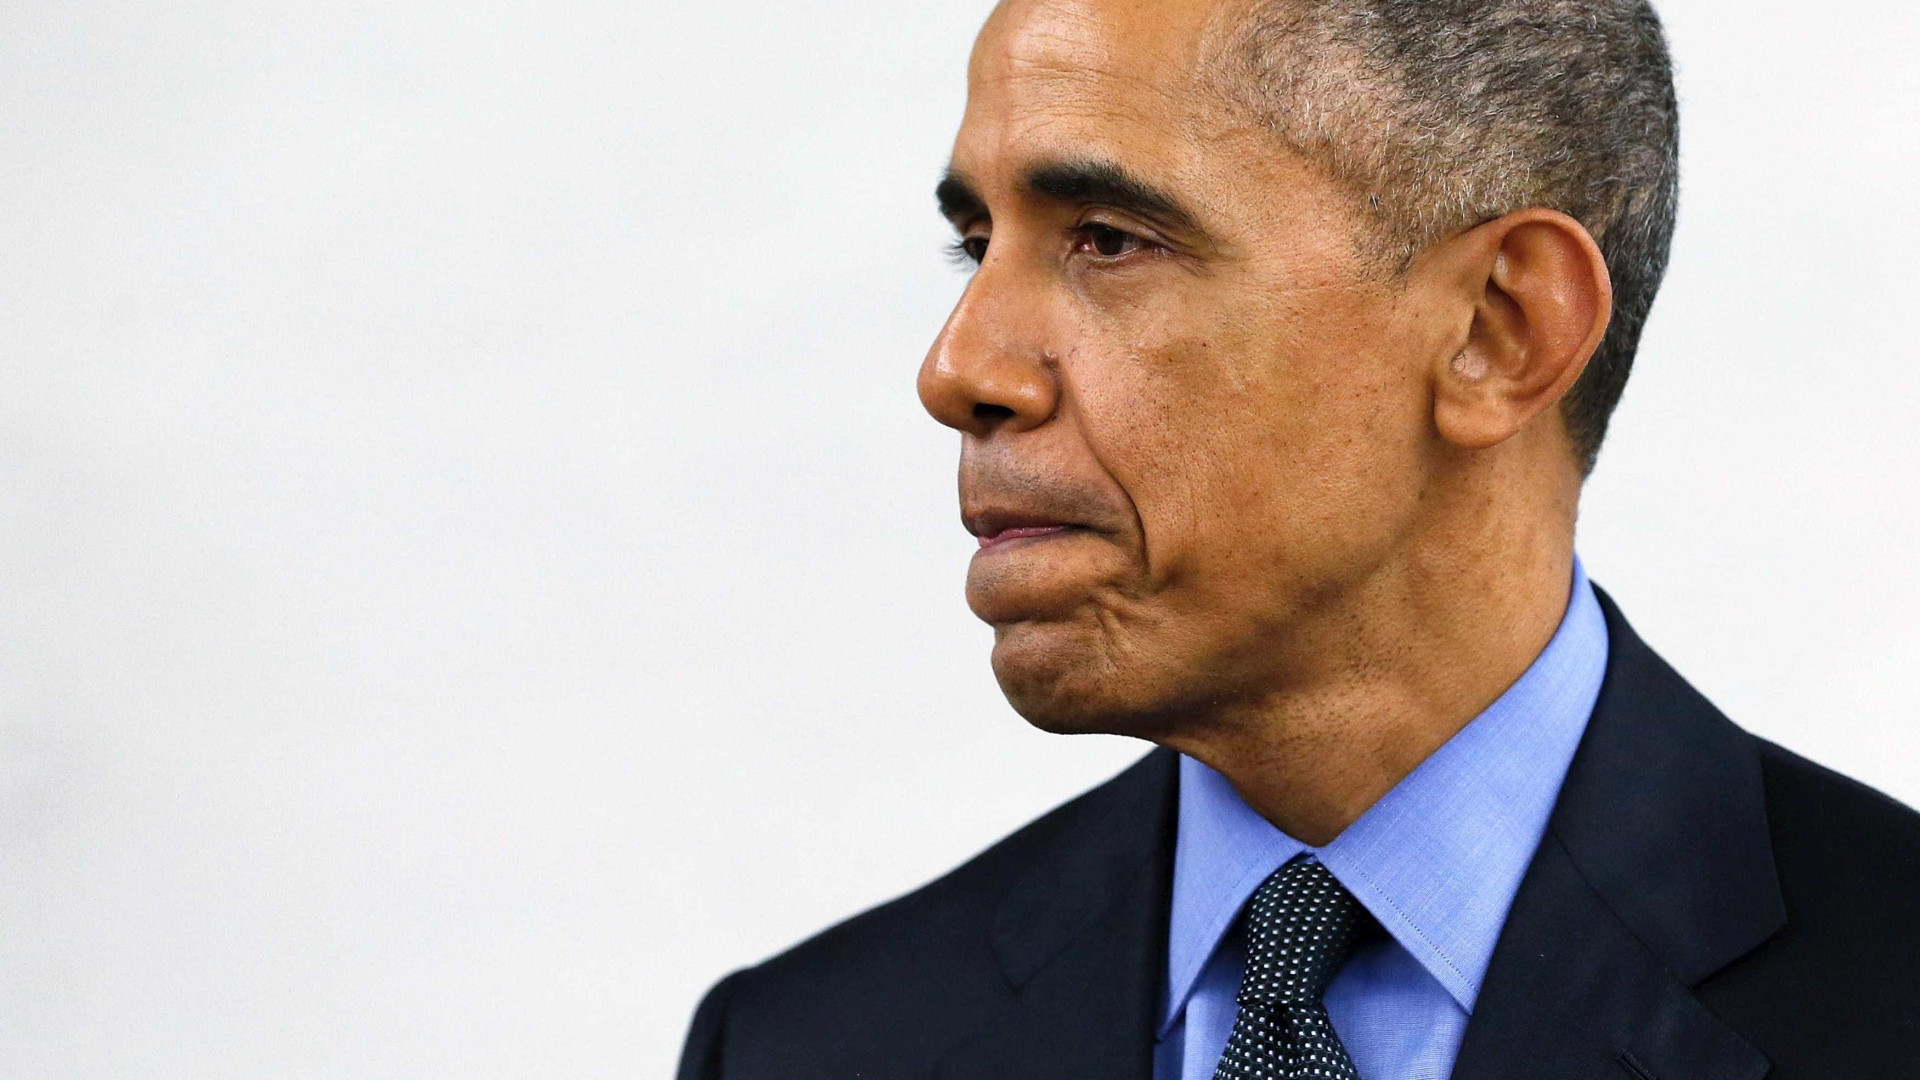 Obama diz que saída de acordo com Irã é 'erro gravíssimo'